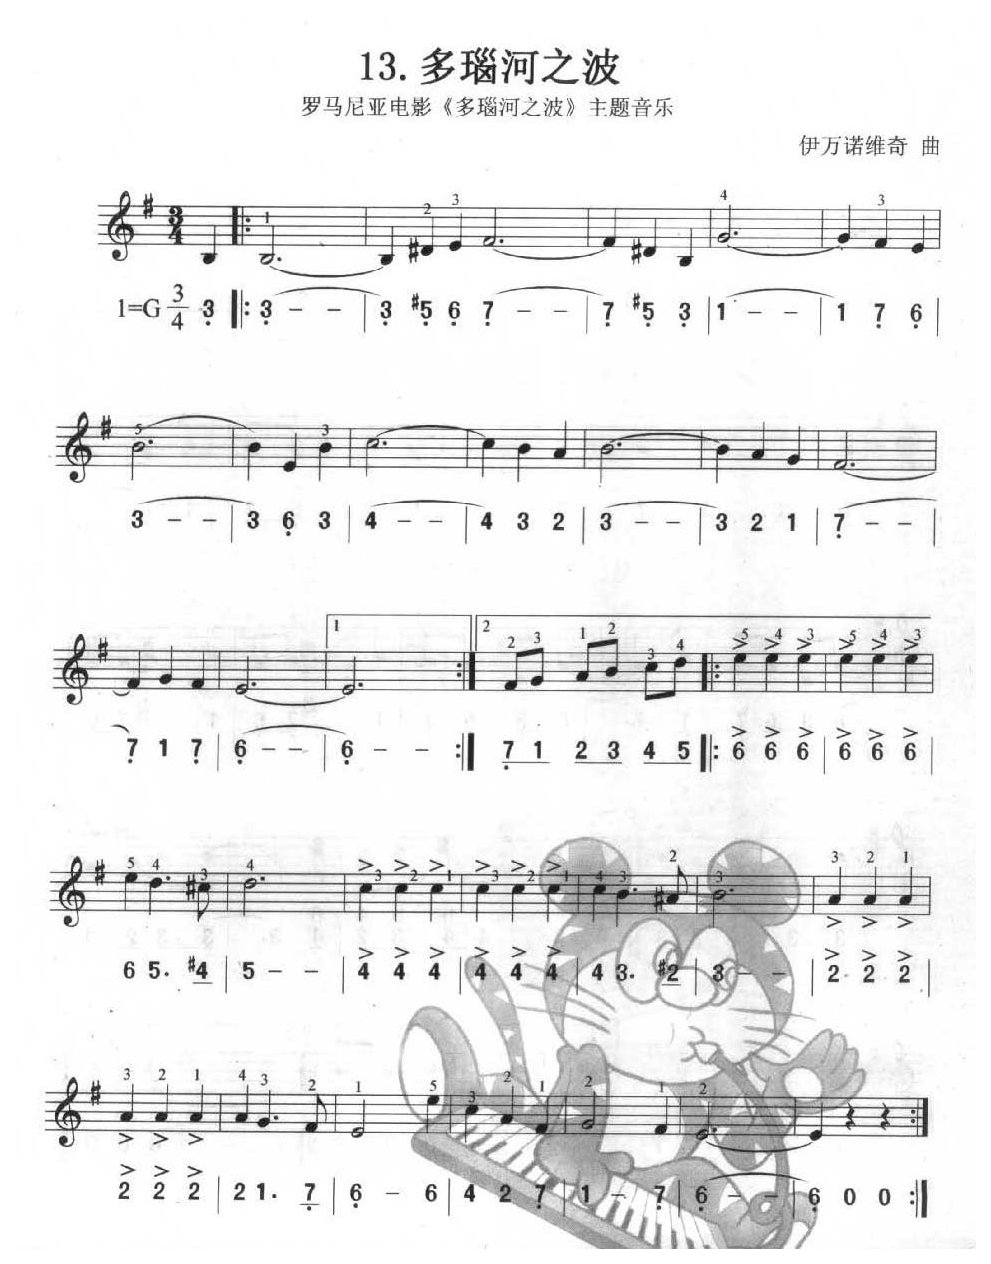 单声部口风琴乐曲【多瑙河之波】一个升号调的练习